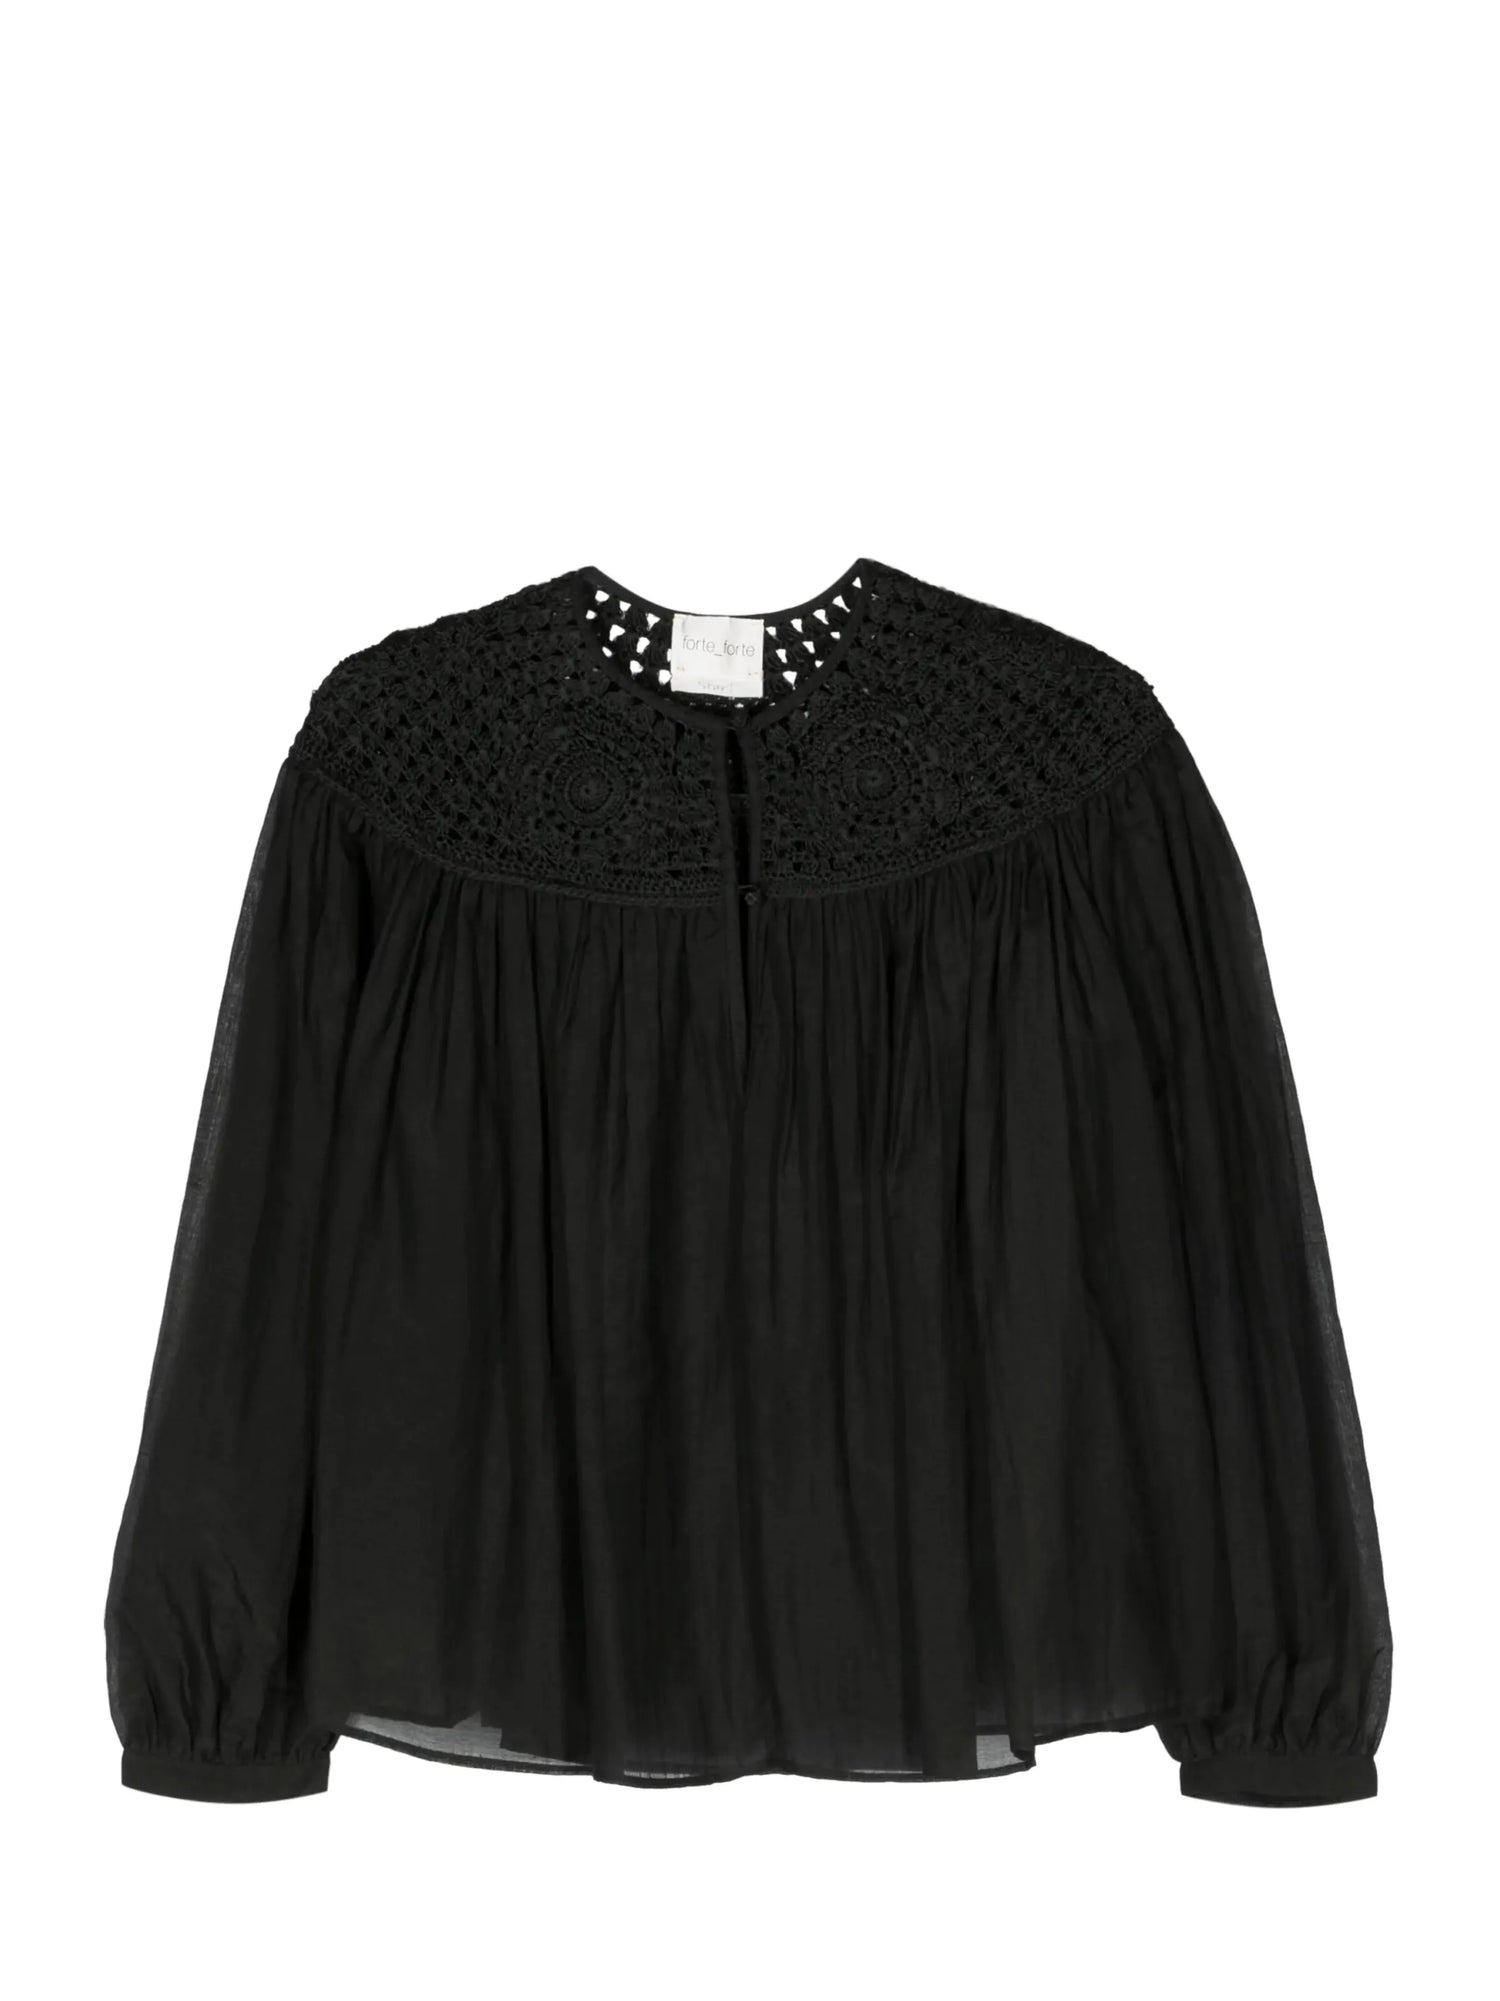 Cotton silk voile bohemian shirt crochet details, black